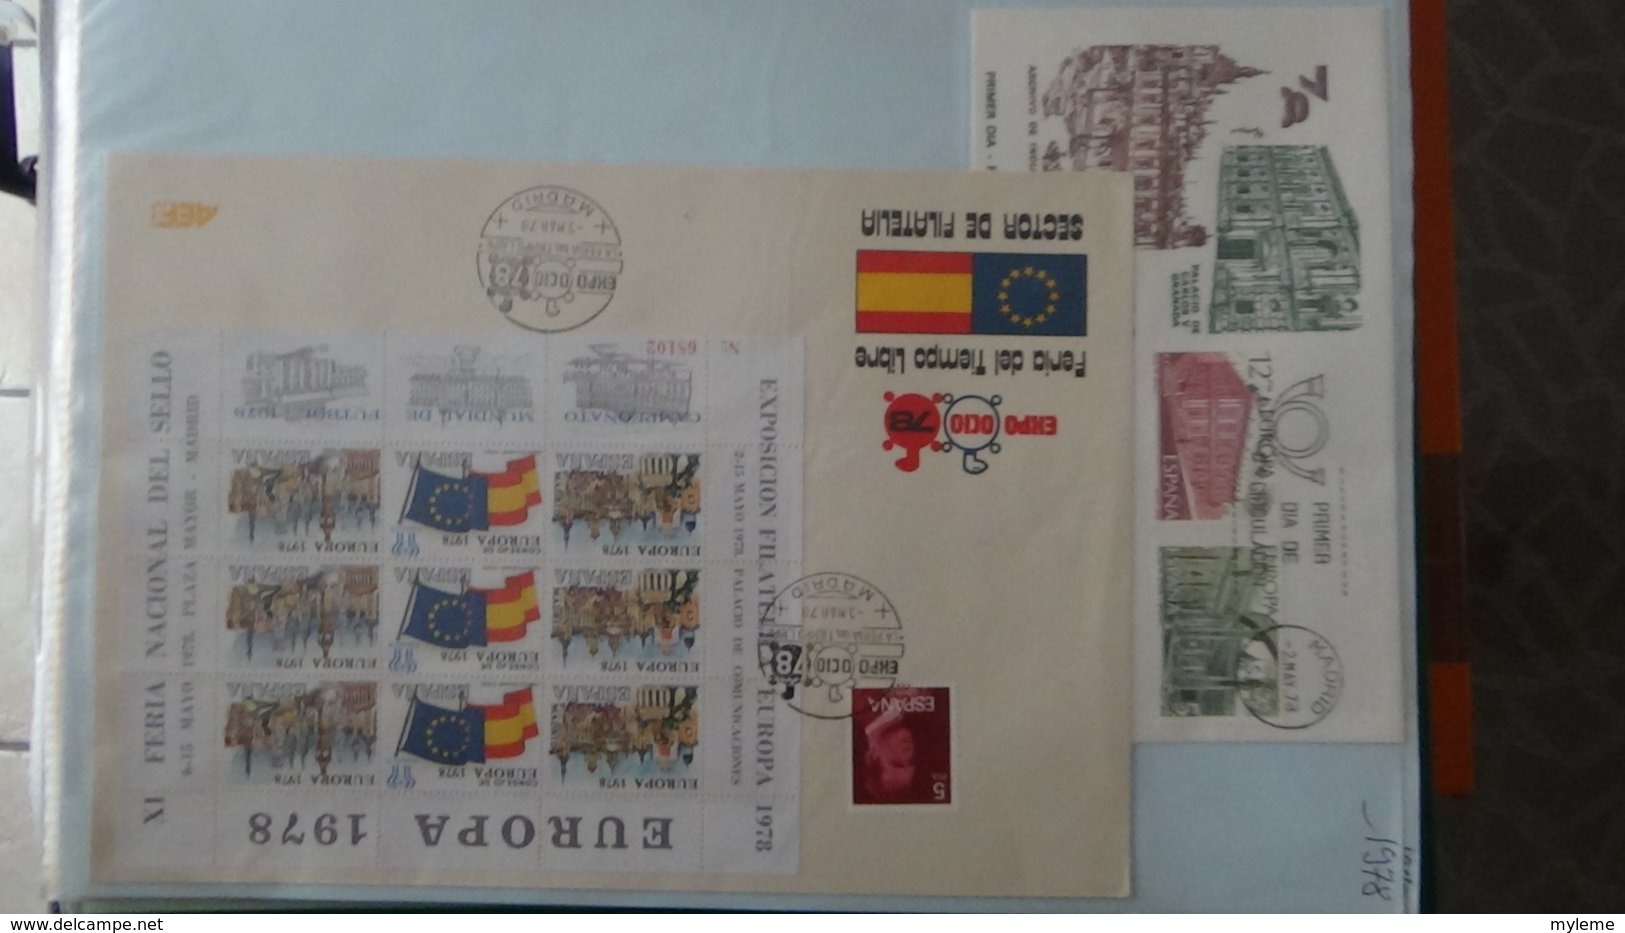 Dispersion d'une collection d'enveloppe 1er jour et autres dont 137 sur le thème EUROPA